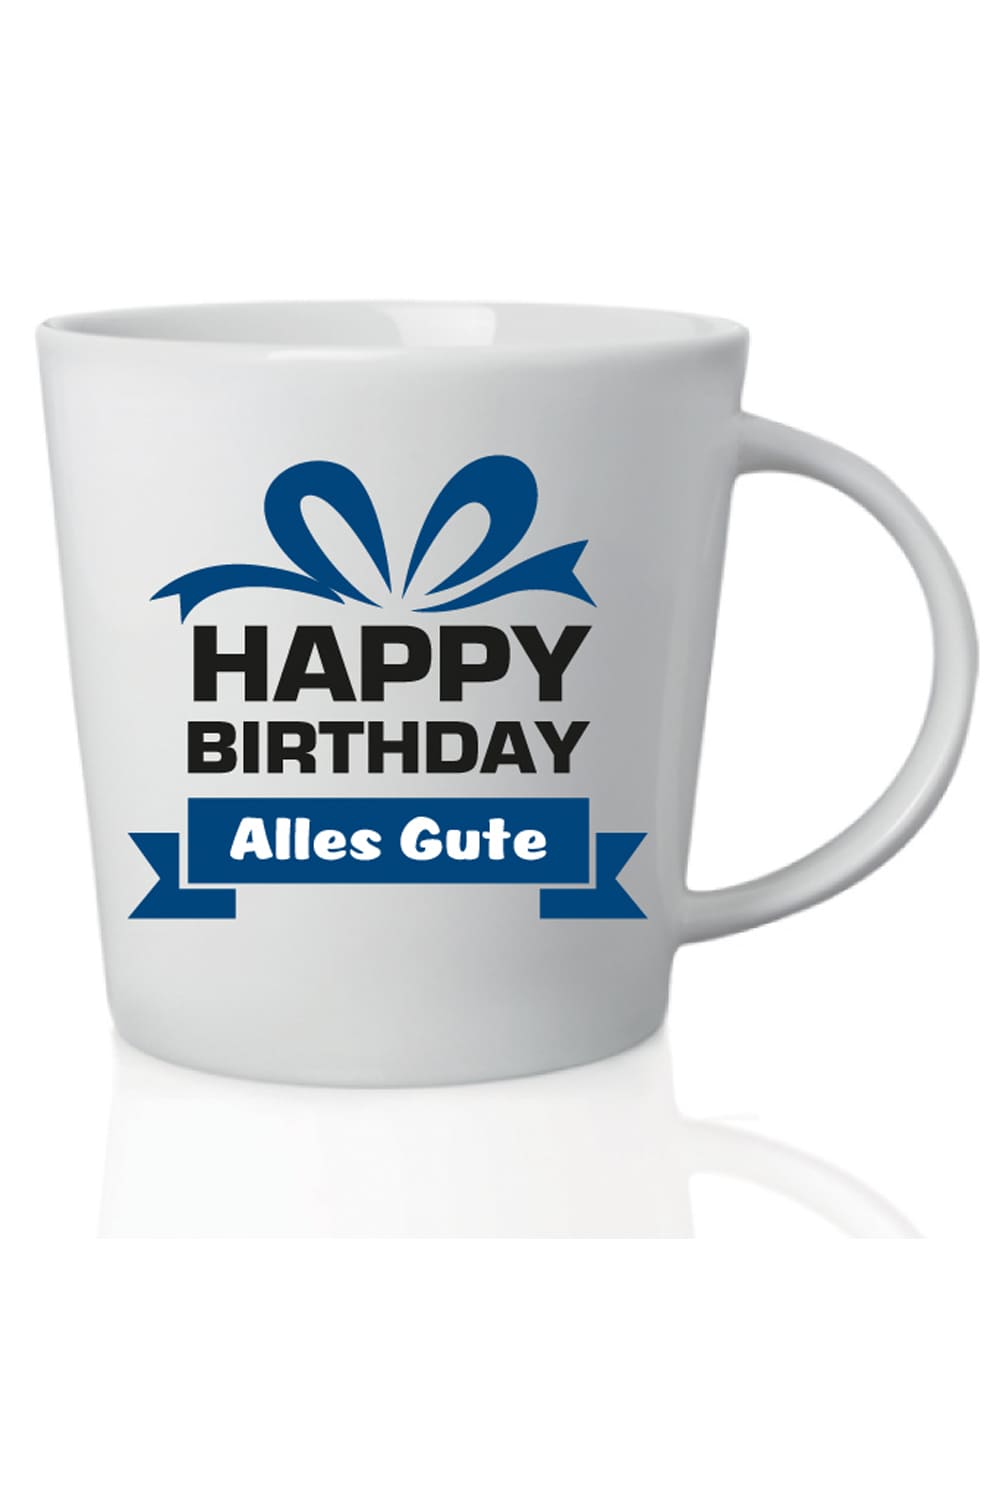 Die Spruchtasse mit der Aufschrift: Happy Birthday. Alles Gute., ist ein grossartiges Geburtstagsgeschenk. Die Tasse kann beliebig mit anderen Geschenken kombiniert werden. Ein kreatives Geschenk zum Geburtstag und fuer Alle, die gerne Kaffee und Tee trinken. 